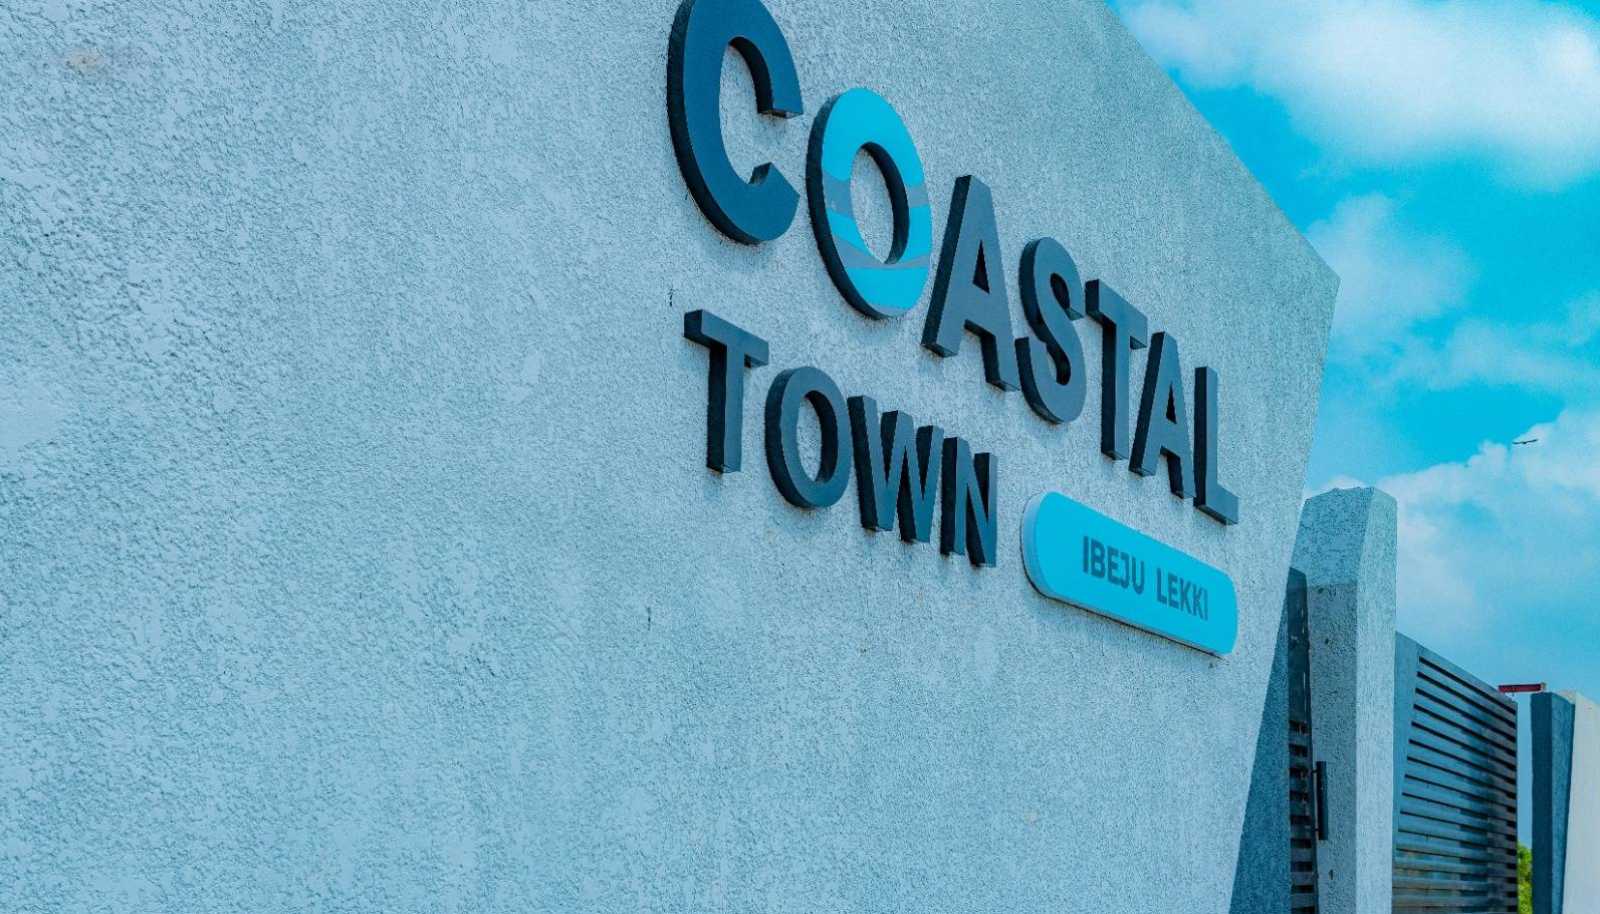 coastaltowb